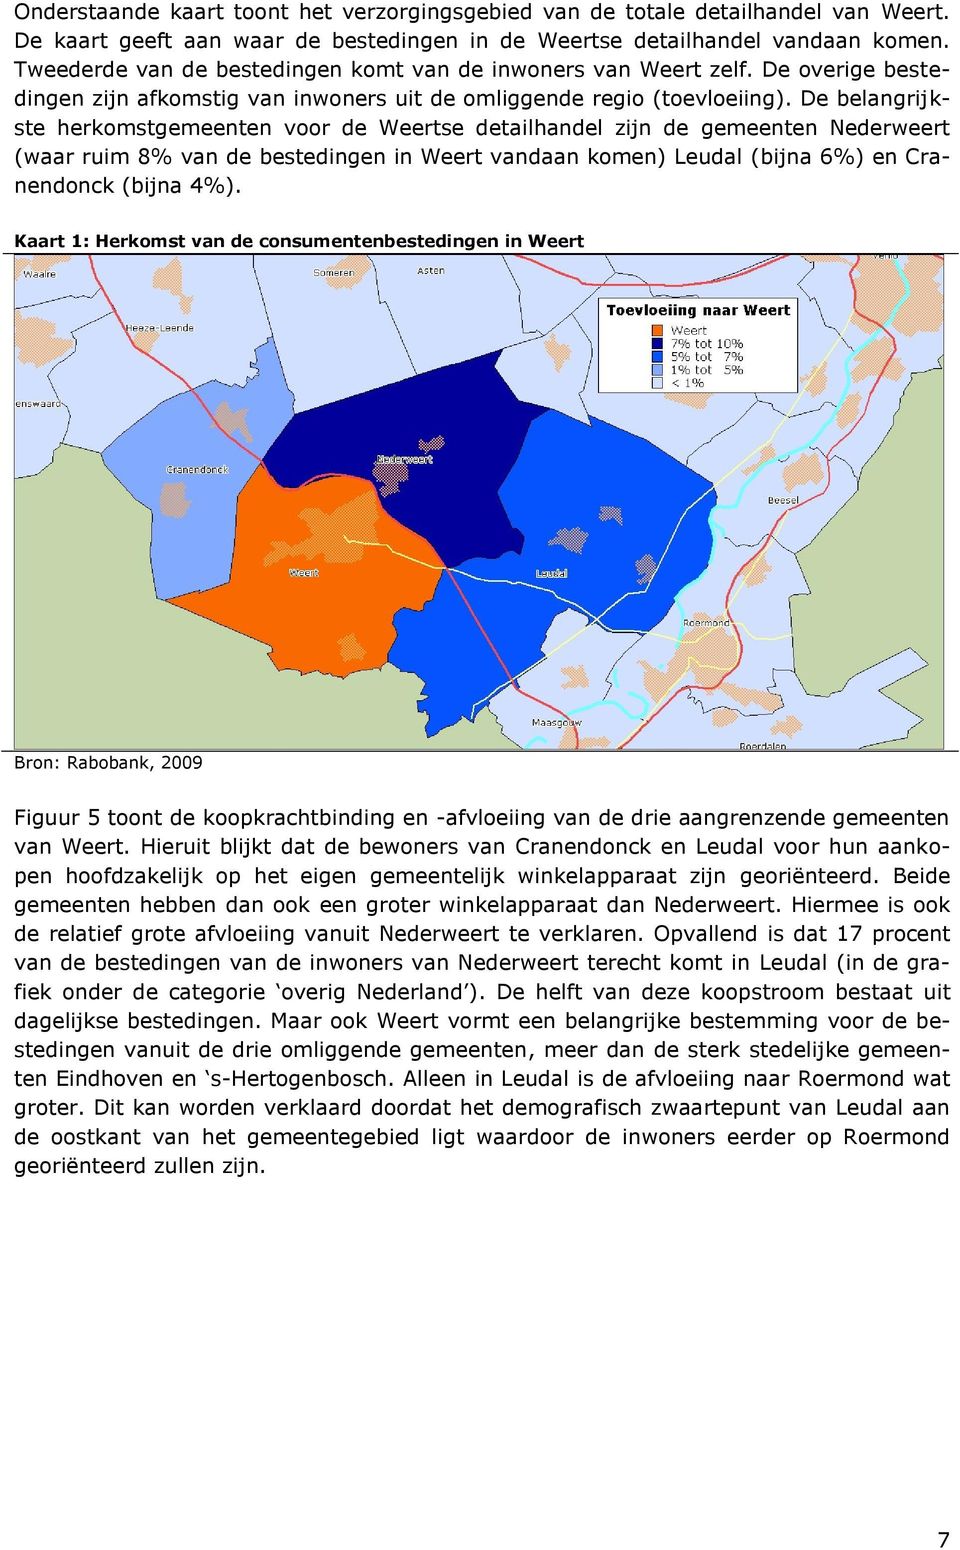 De belangrijkste herkomstgemeenten voor de Weertse detailhandel zijn de gemeenten Nederweert (waar ruim 8% van de bestedingen in Weert vandaan komen) Leudal (bijna 6%) en Cranendonck (bijna 4%).